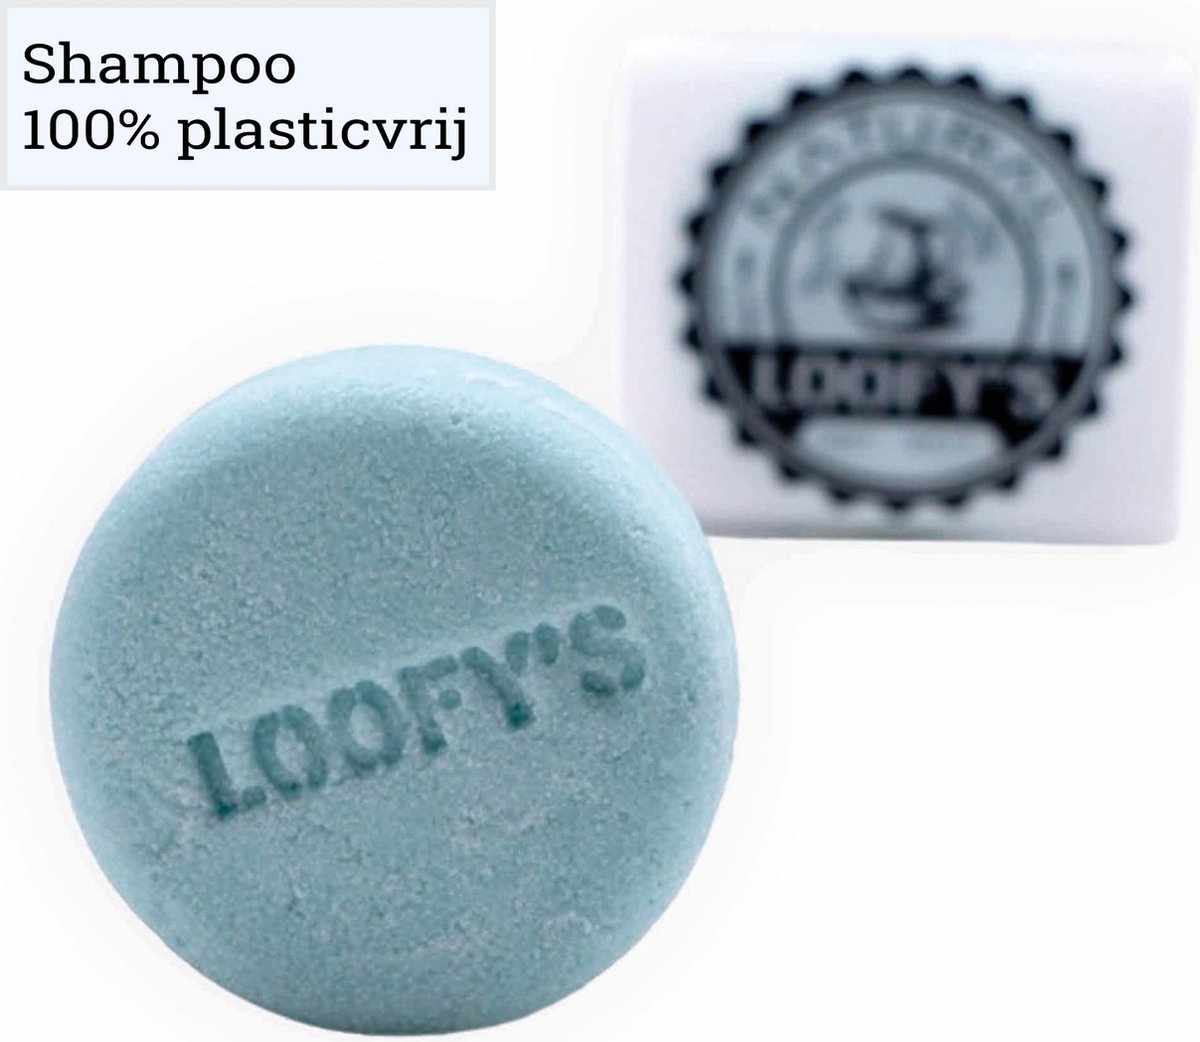 Loofy's - Voordeelverpakking Shampoo Bar voor Vrouwen - [Blue|Soft Cotton] - Alle Krullend Haar - Plasticvrij & Vegan - Loofys